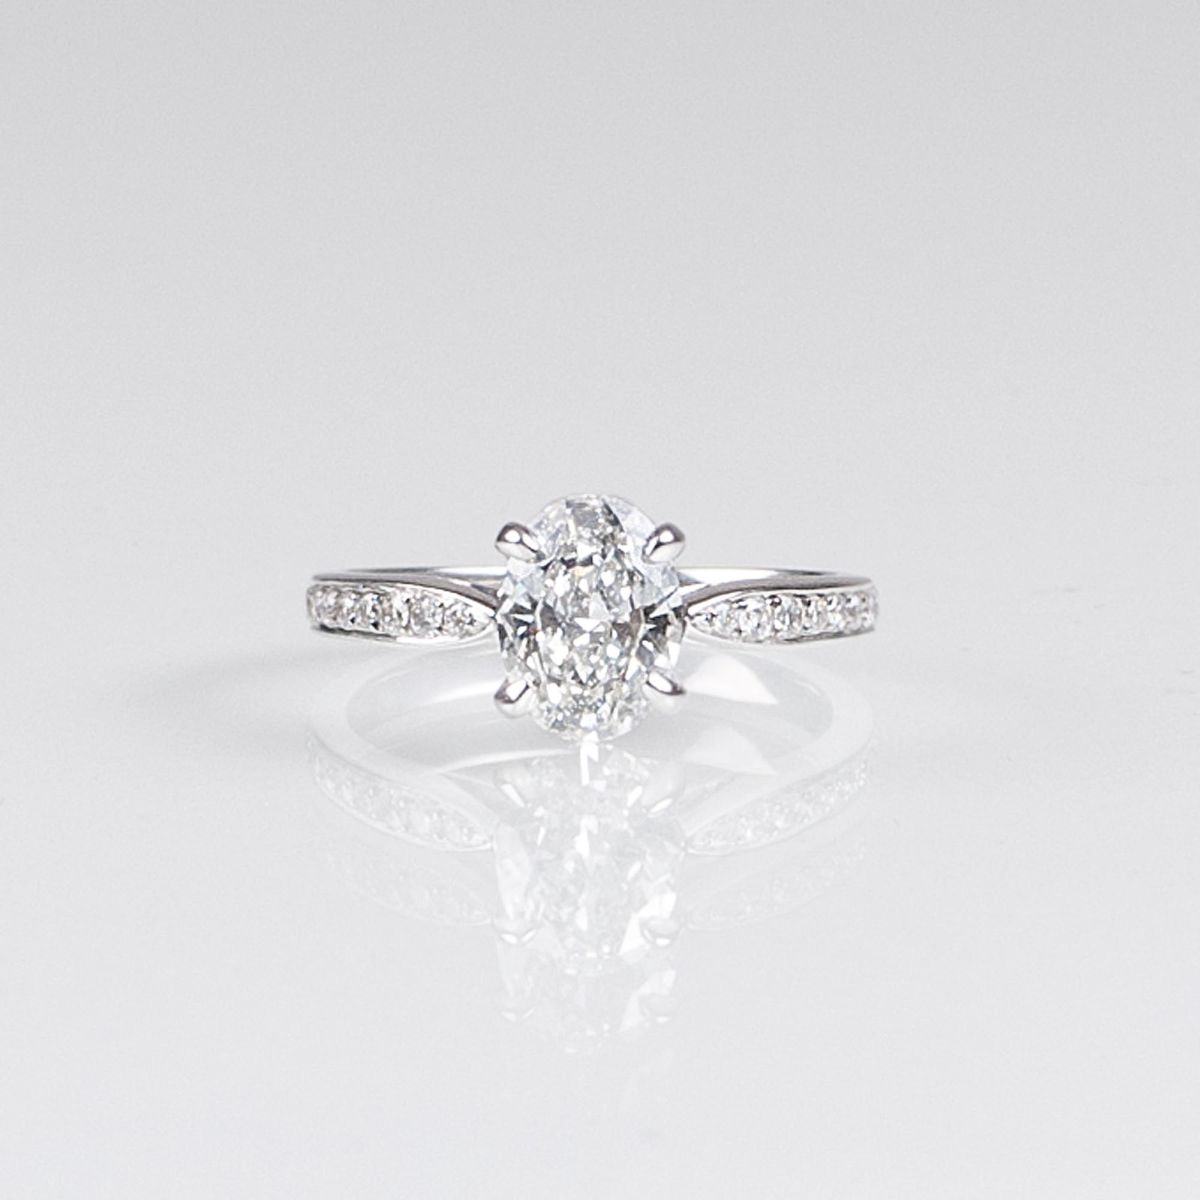 A fine Solitaire Diamond Ring